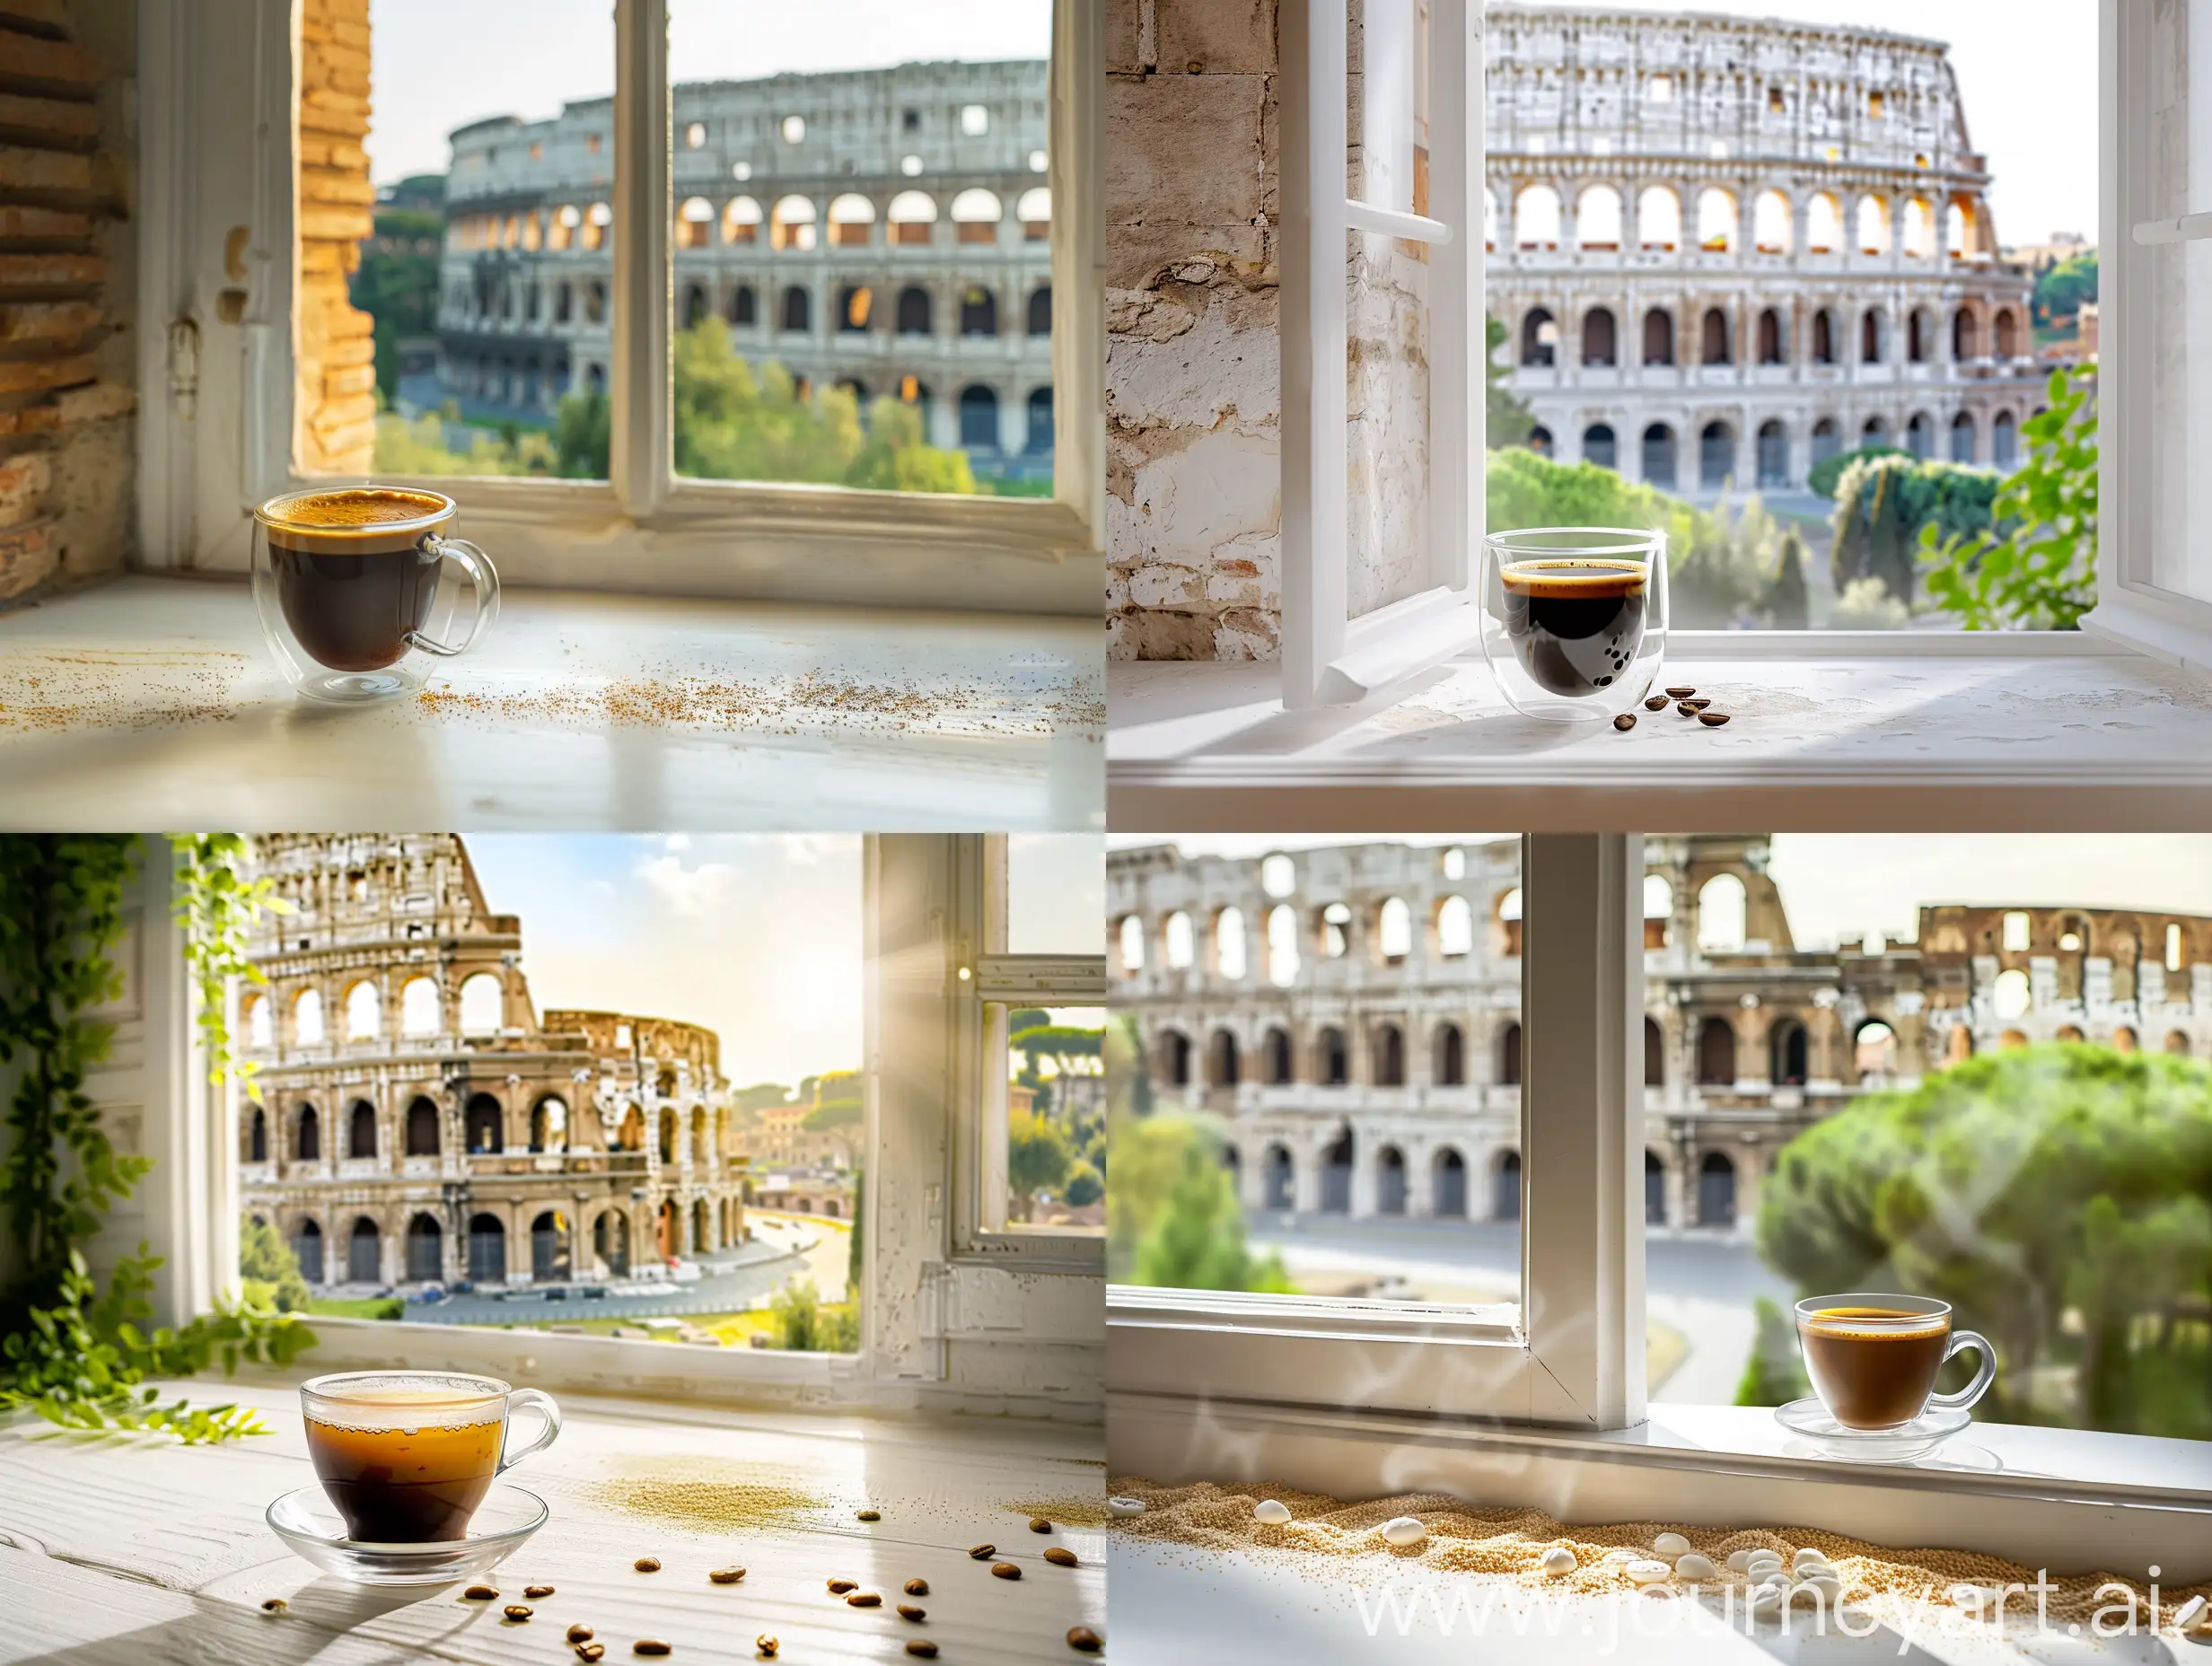 Рекламная фотография кофе в стеклянной чашке на белом красивом подоконнике открытое окно с видом на Колизей в Италии, вид спереди, студийная съемка с помощью цифровой зеркальной камеры Canon и микрообъектива IF-ED VR 105 мм f/2,8G, фотореалистичная, снимок с земли, естественное освещение, глубина резкости, макросъемка пейзажа — q 0,5 — s 250